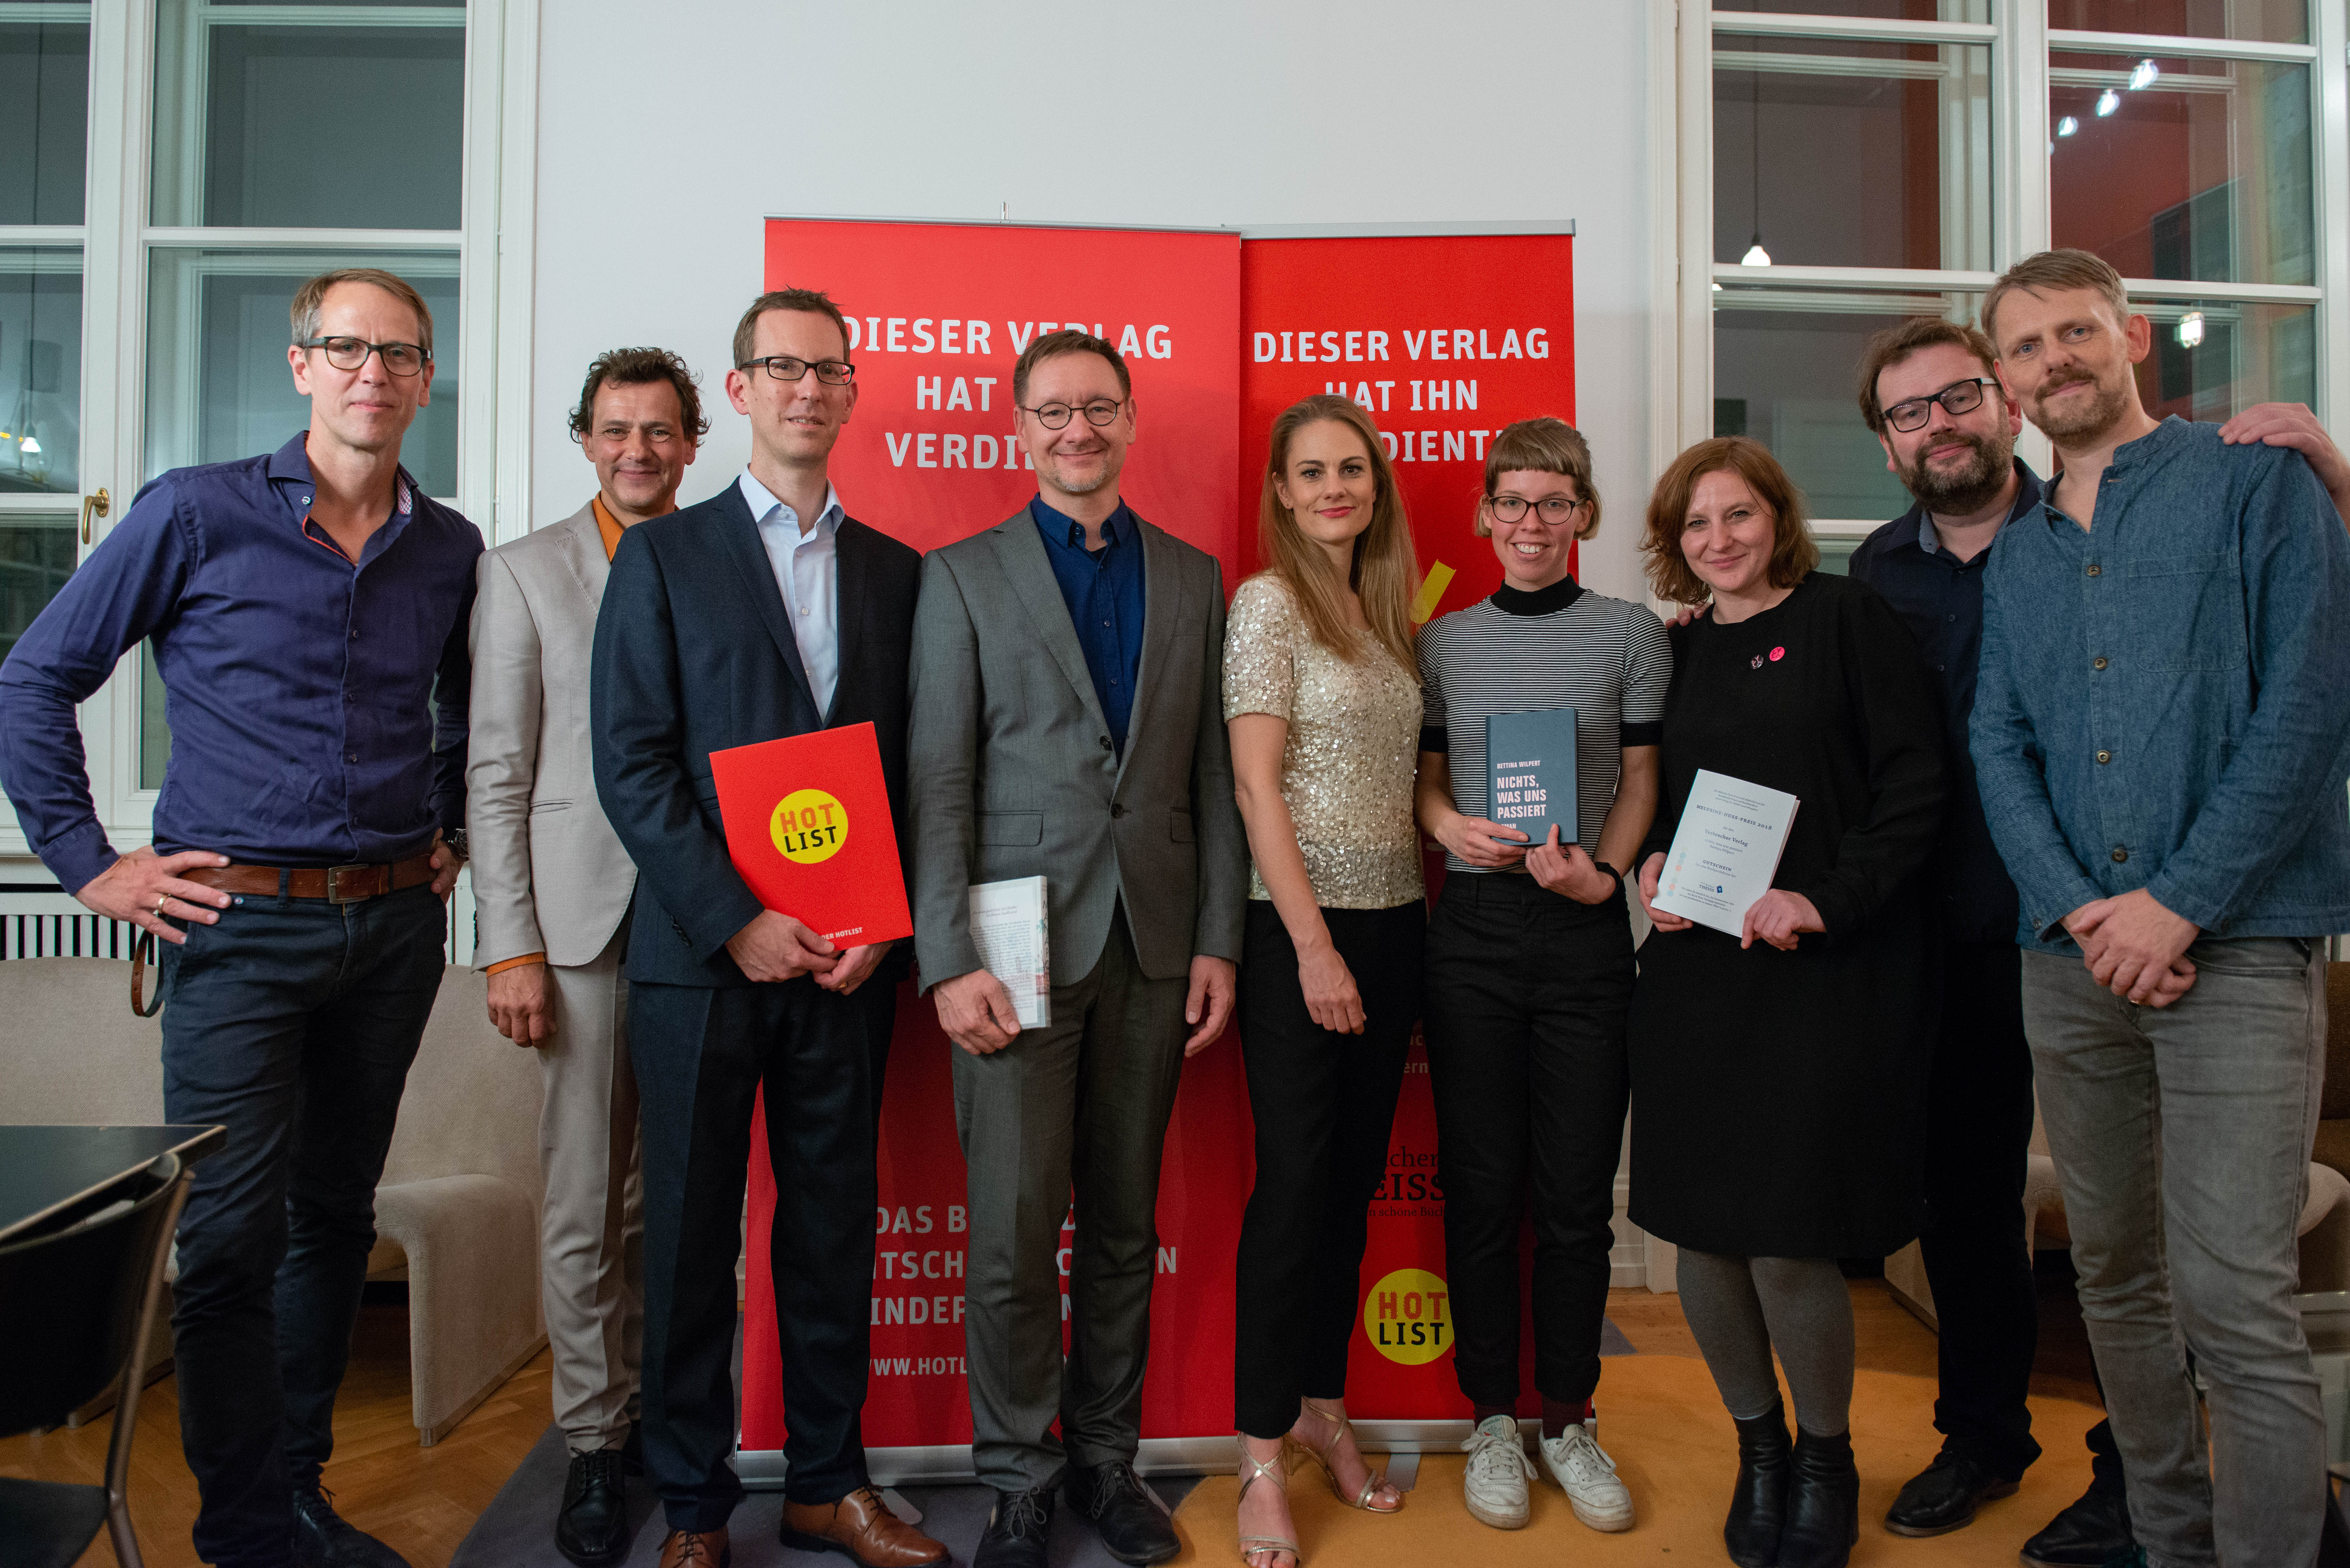 Die Preisträger: Preis der Hotlist und Melusine-Huss-Preis 2018